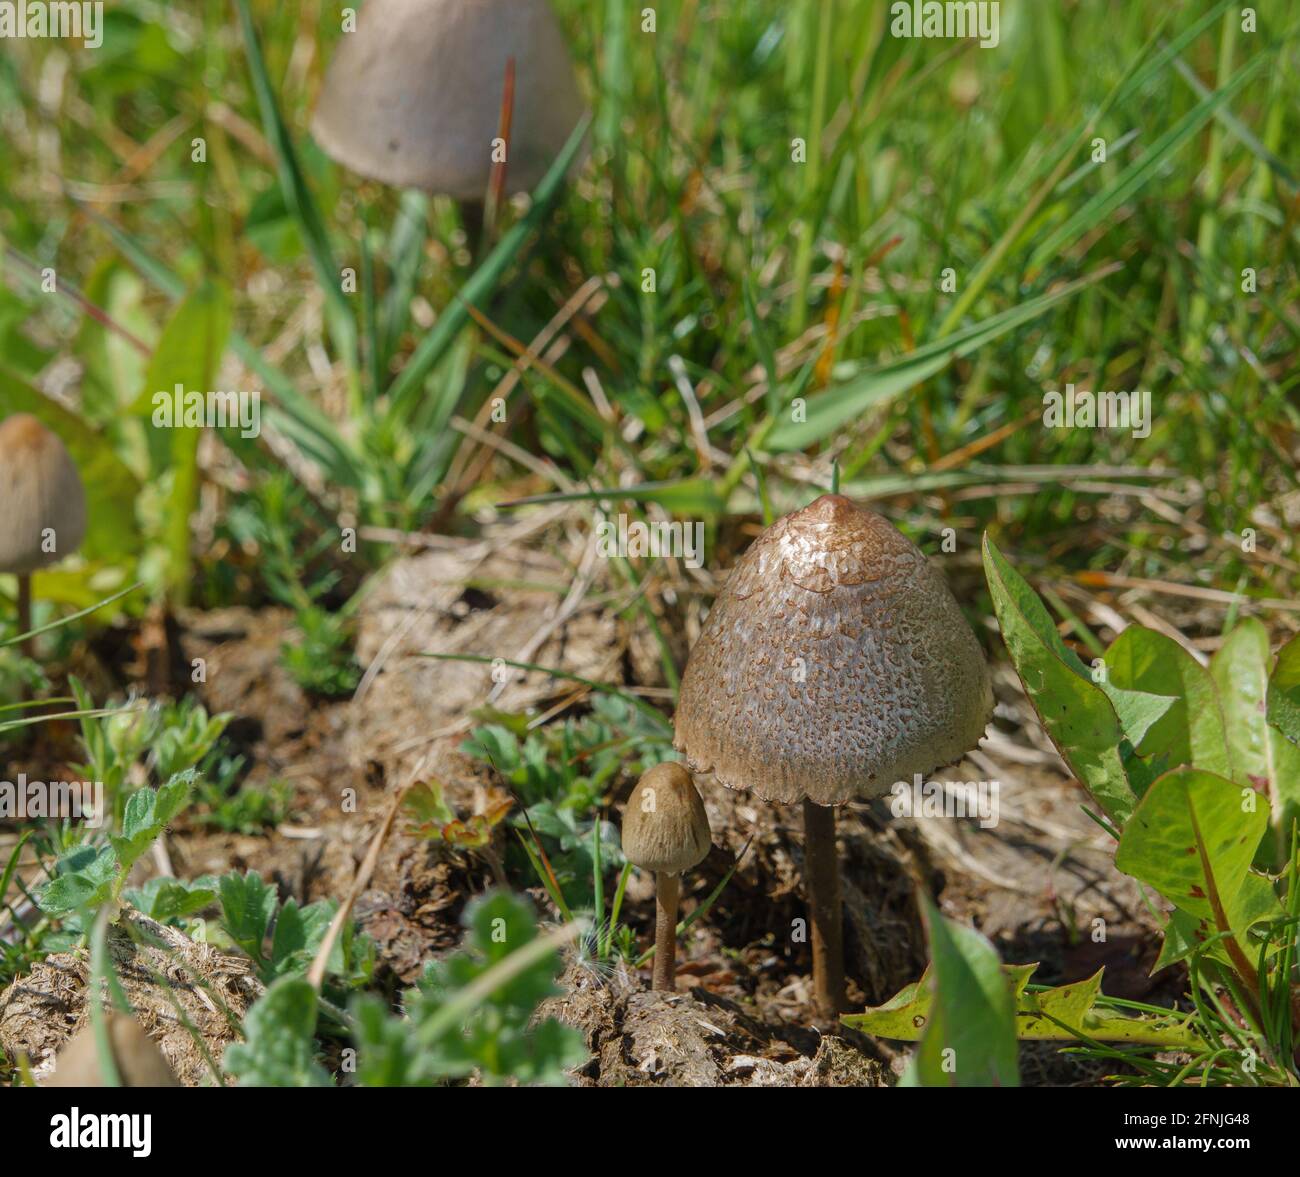 Une paire de champignons sauvages qui poussent dans les prairies de Salisbury Royaume-Uni Banque D'Images